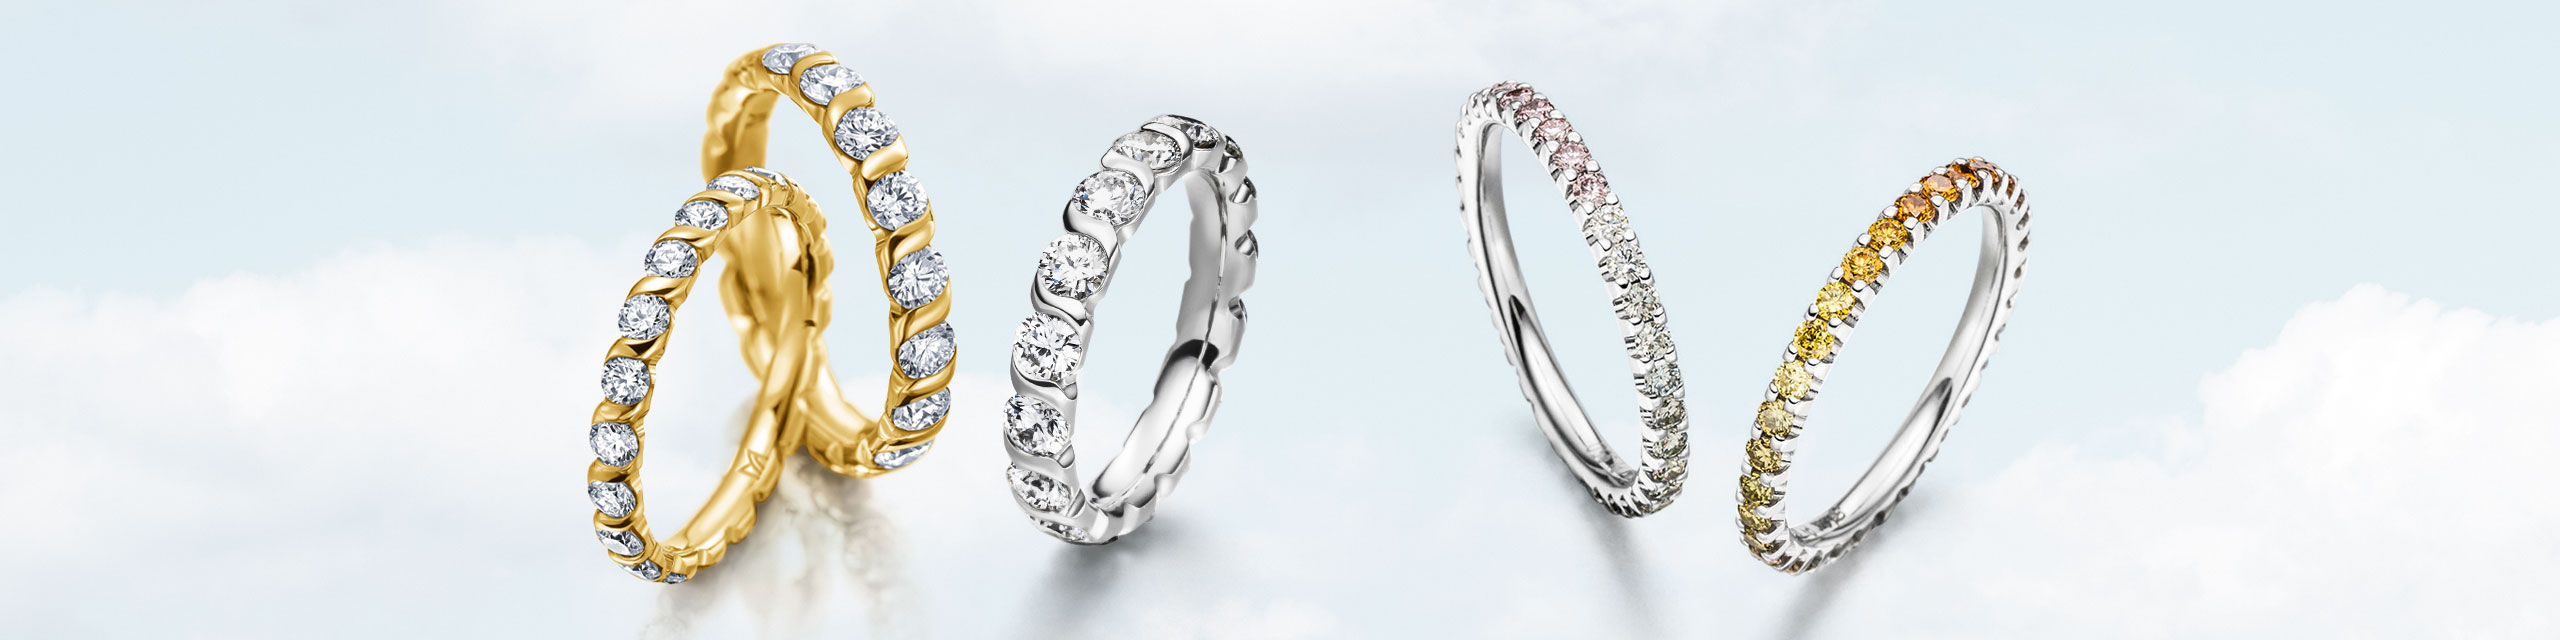 Memoire Ringe mit vielen Diamanten in München bei Ihrem Juwelier Fridrich.